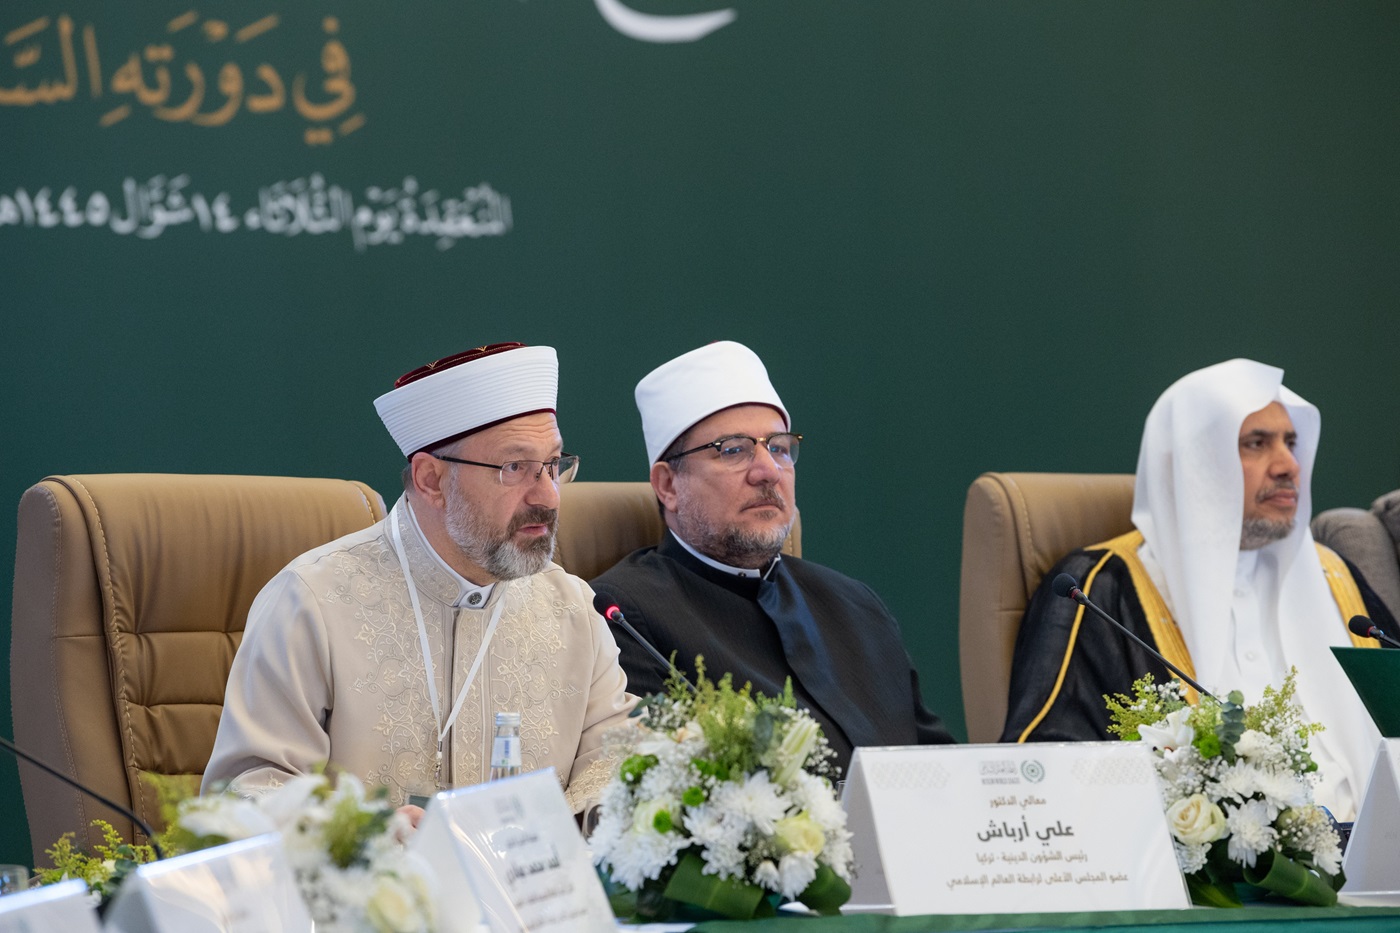 Sheij Ali Erbaş, Presidente de Asuntos Religiosos de la República de Turquía y miembro del Consejo Supremo de la Liga del Mundo Islámico, durante la 46ª sesión del Consejo Supremo: